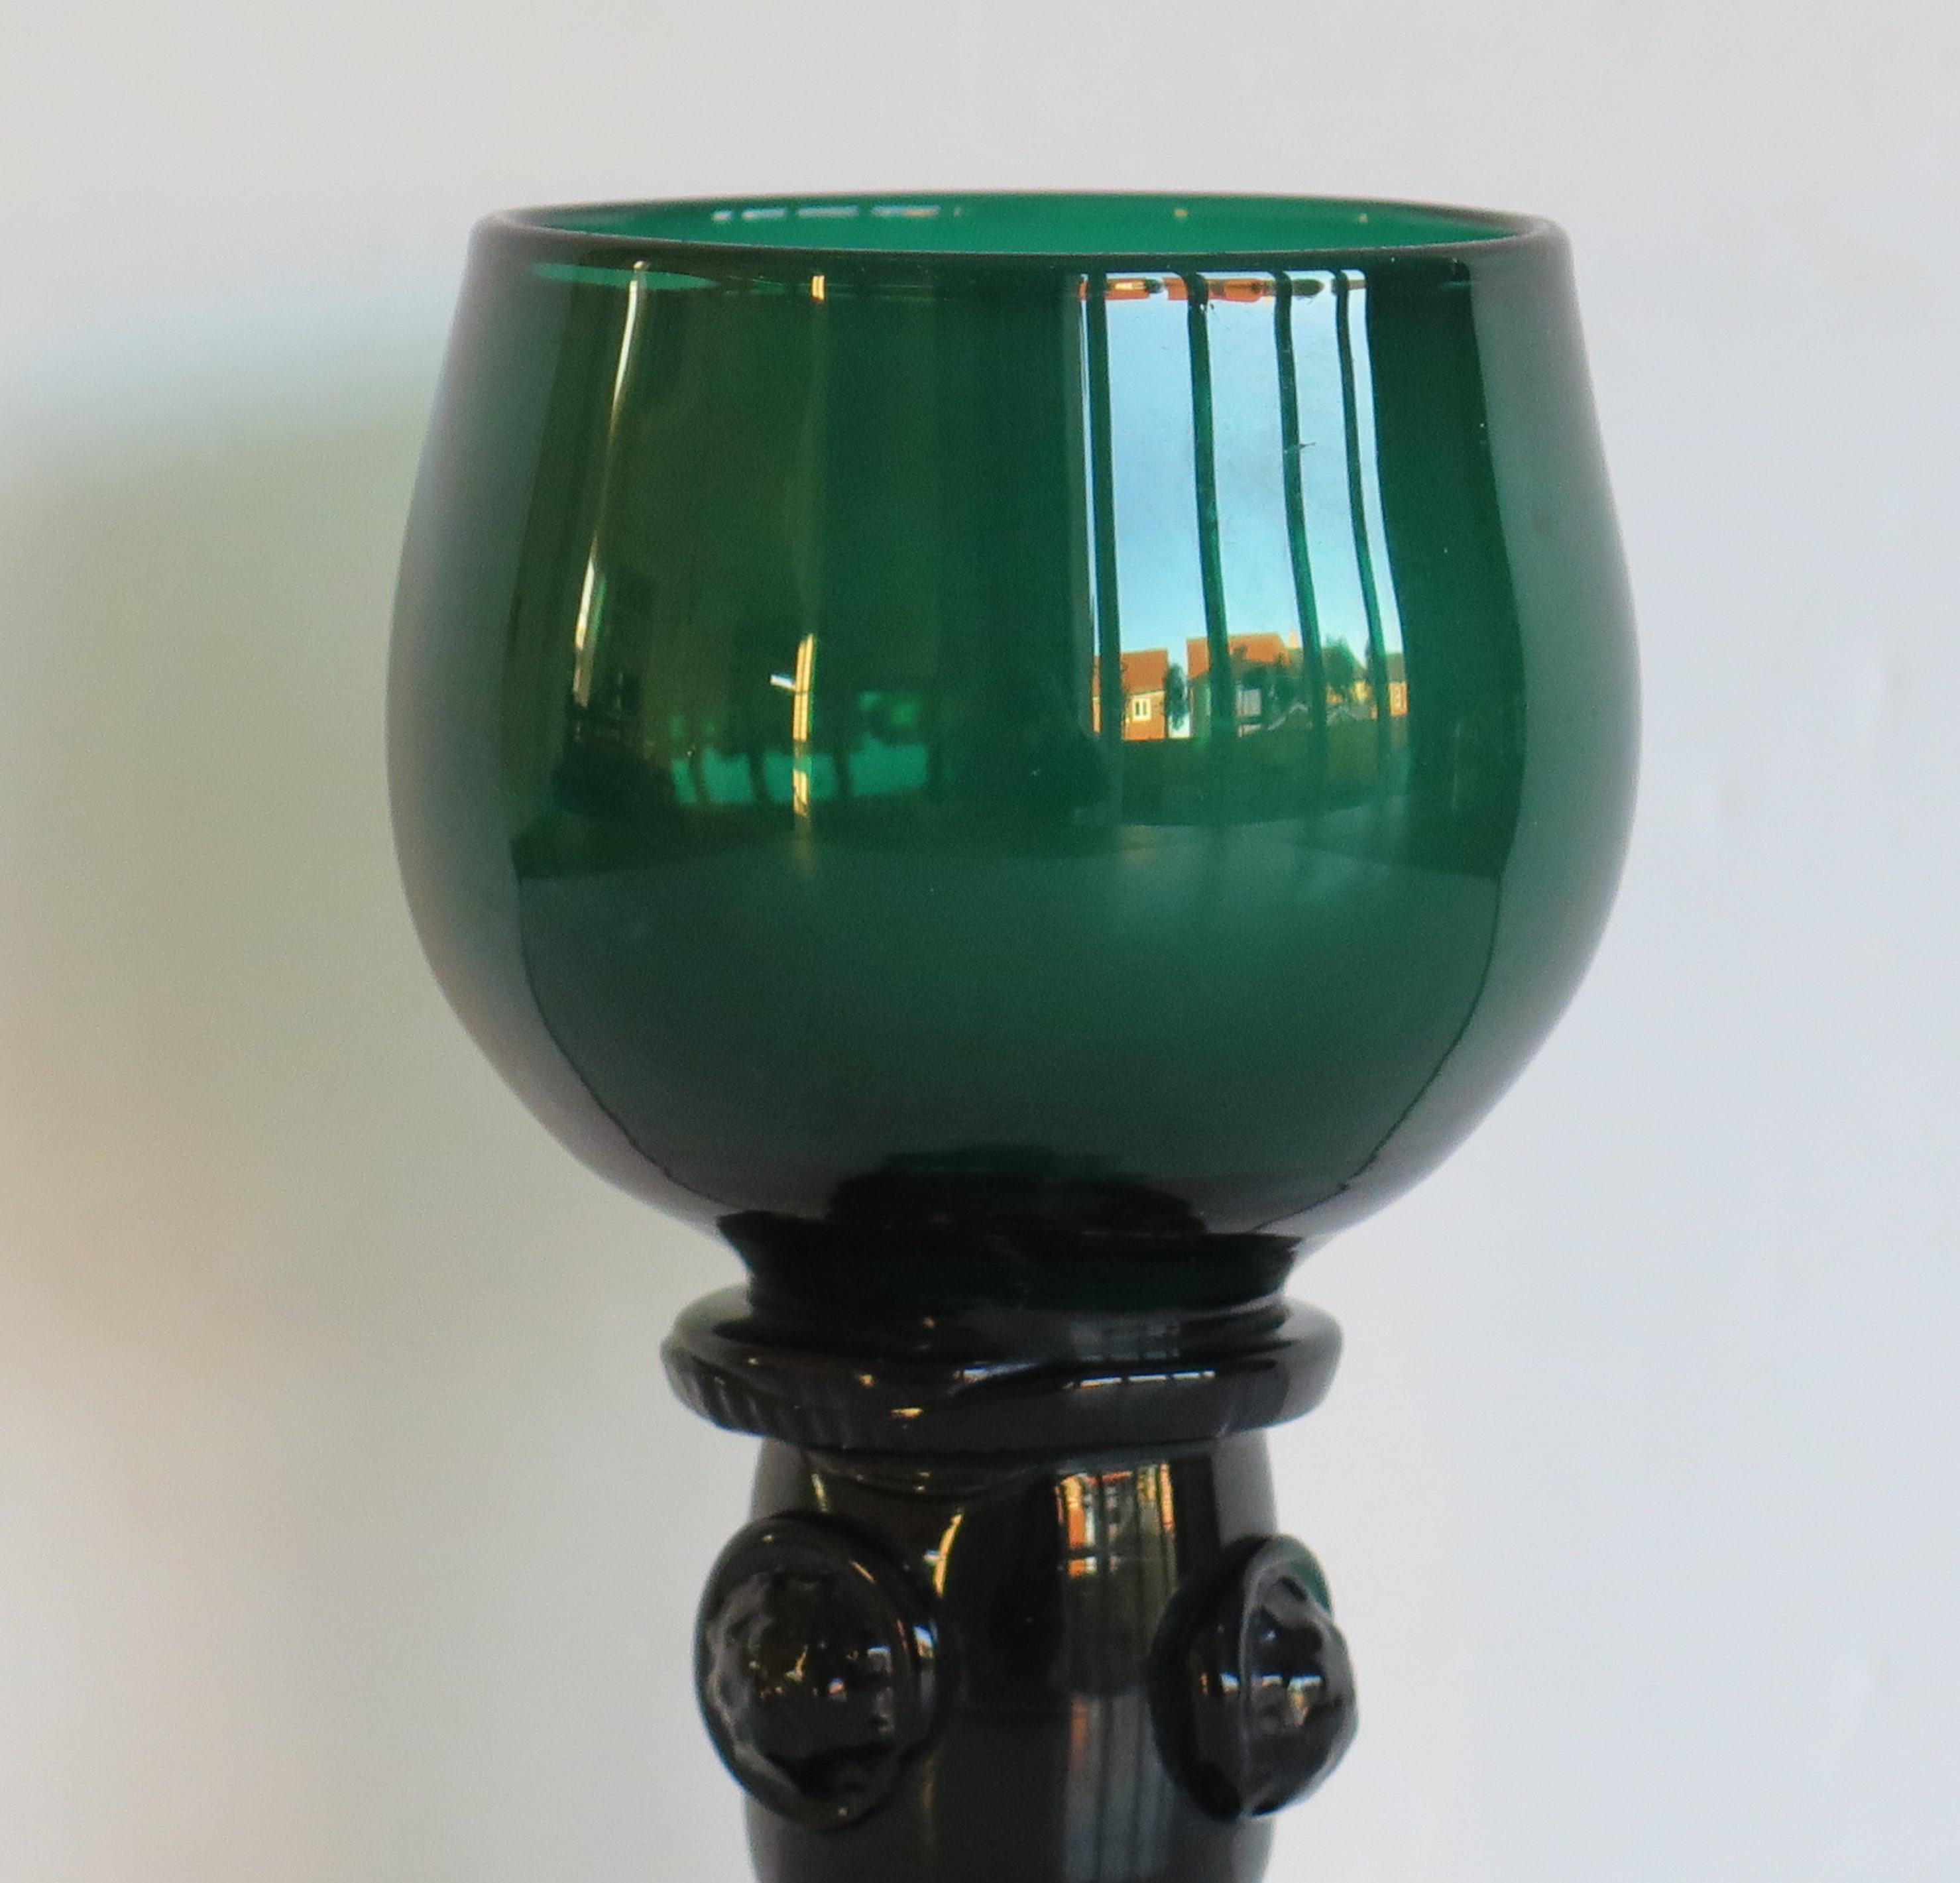 Dies ist ein hervorragendes Beispiel für ein englisches, mundgeblasenes, grünes Weintrinkglas aus Bristol aus dem frühen 19. Jahrhundert, das wir auf die George-III-Regency-Zeit um 1815 datieren.

Diese Glas-Roamers sind ziemlich selten. Das Glas